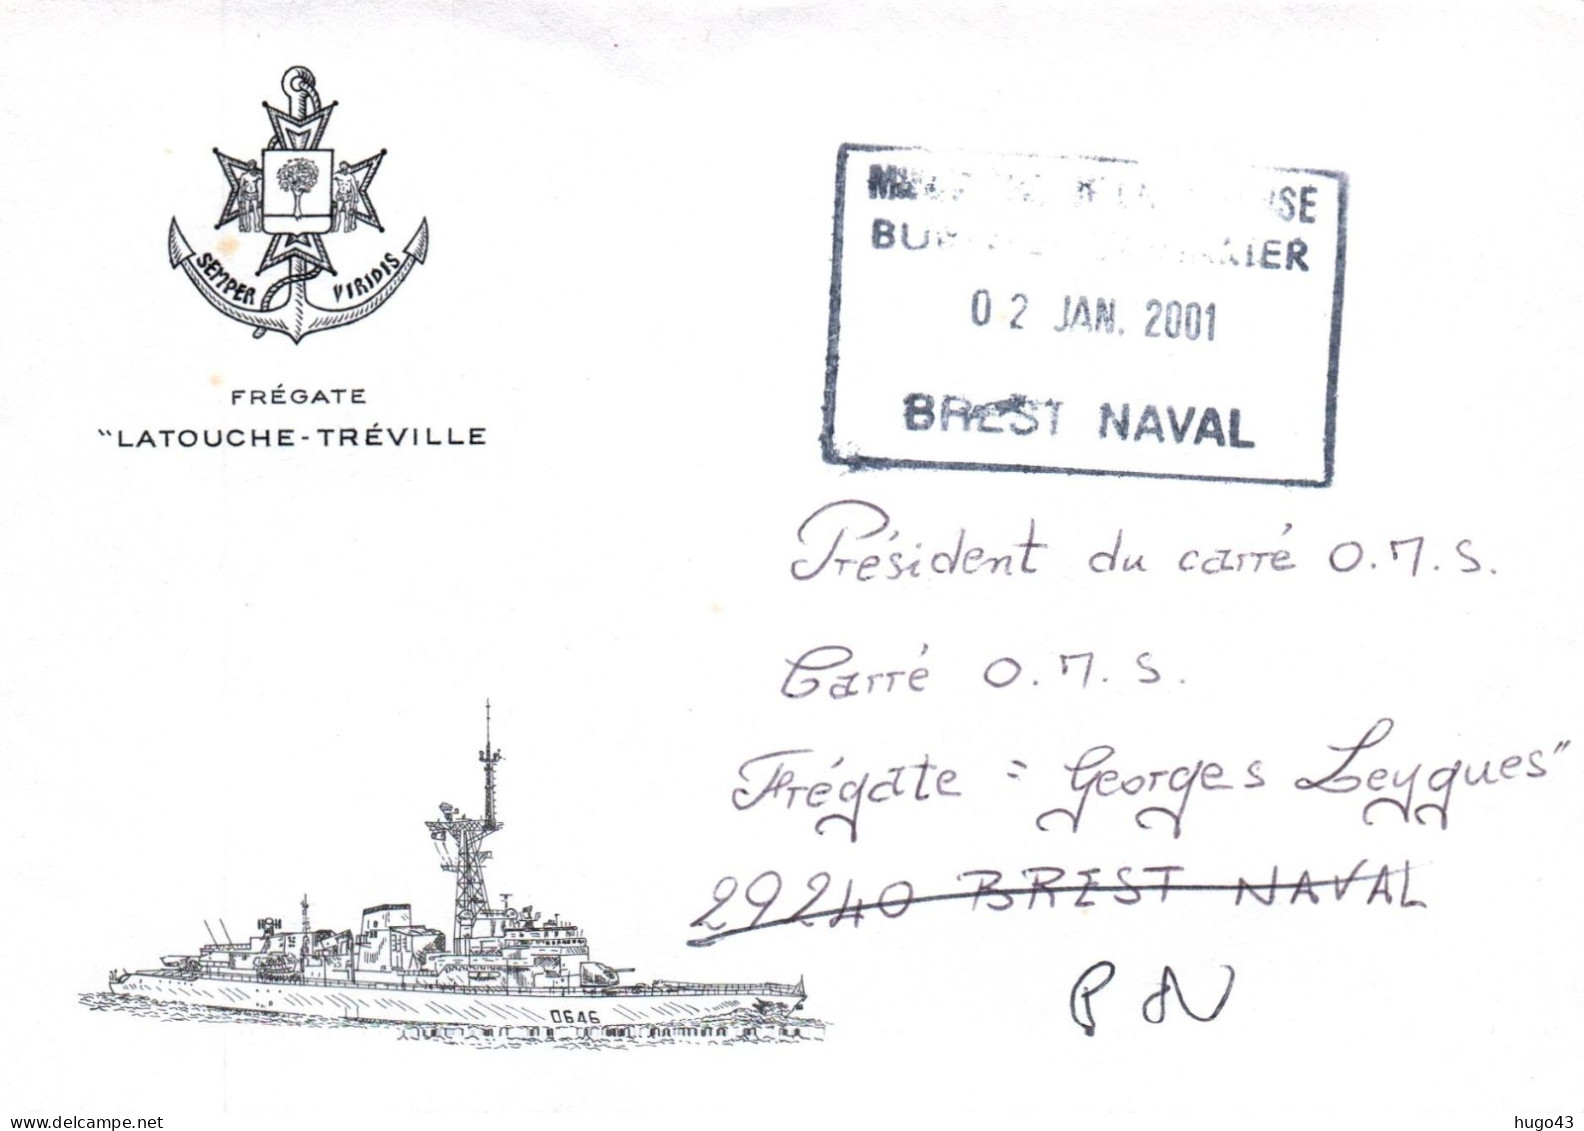 ENVELOPPE AVEC CACHET OFFICIEL FREGATE LATOUCHE TREVILLE - BREST NAVAL LE 02/01/2001 - Seepost